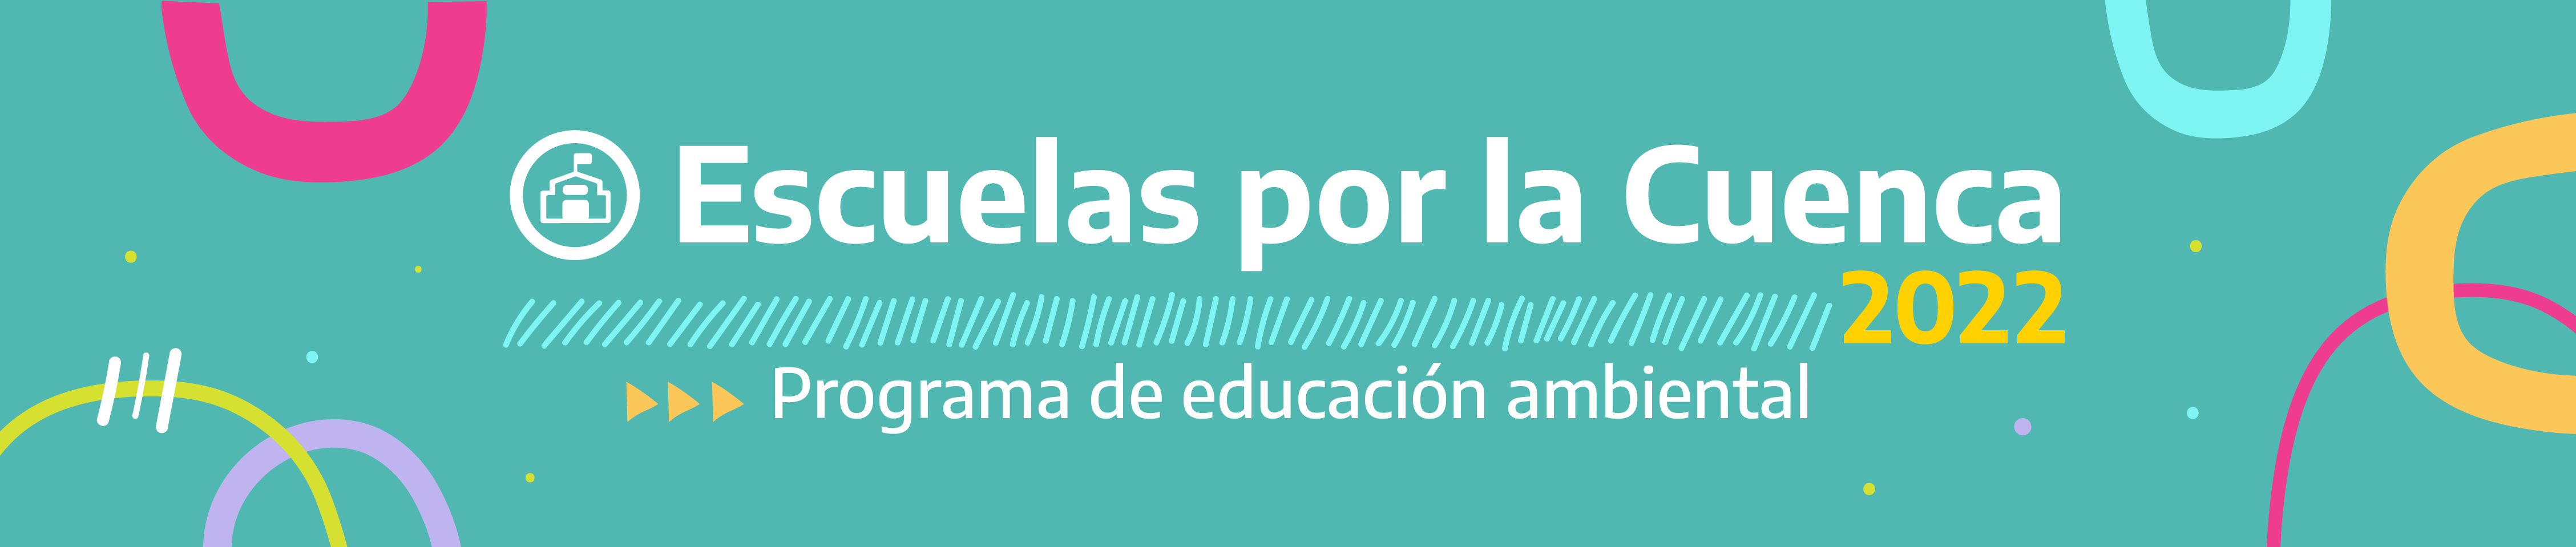 Escuelas por la Cuenca 2022 - Programa de educación ambiental